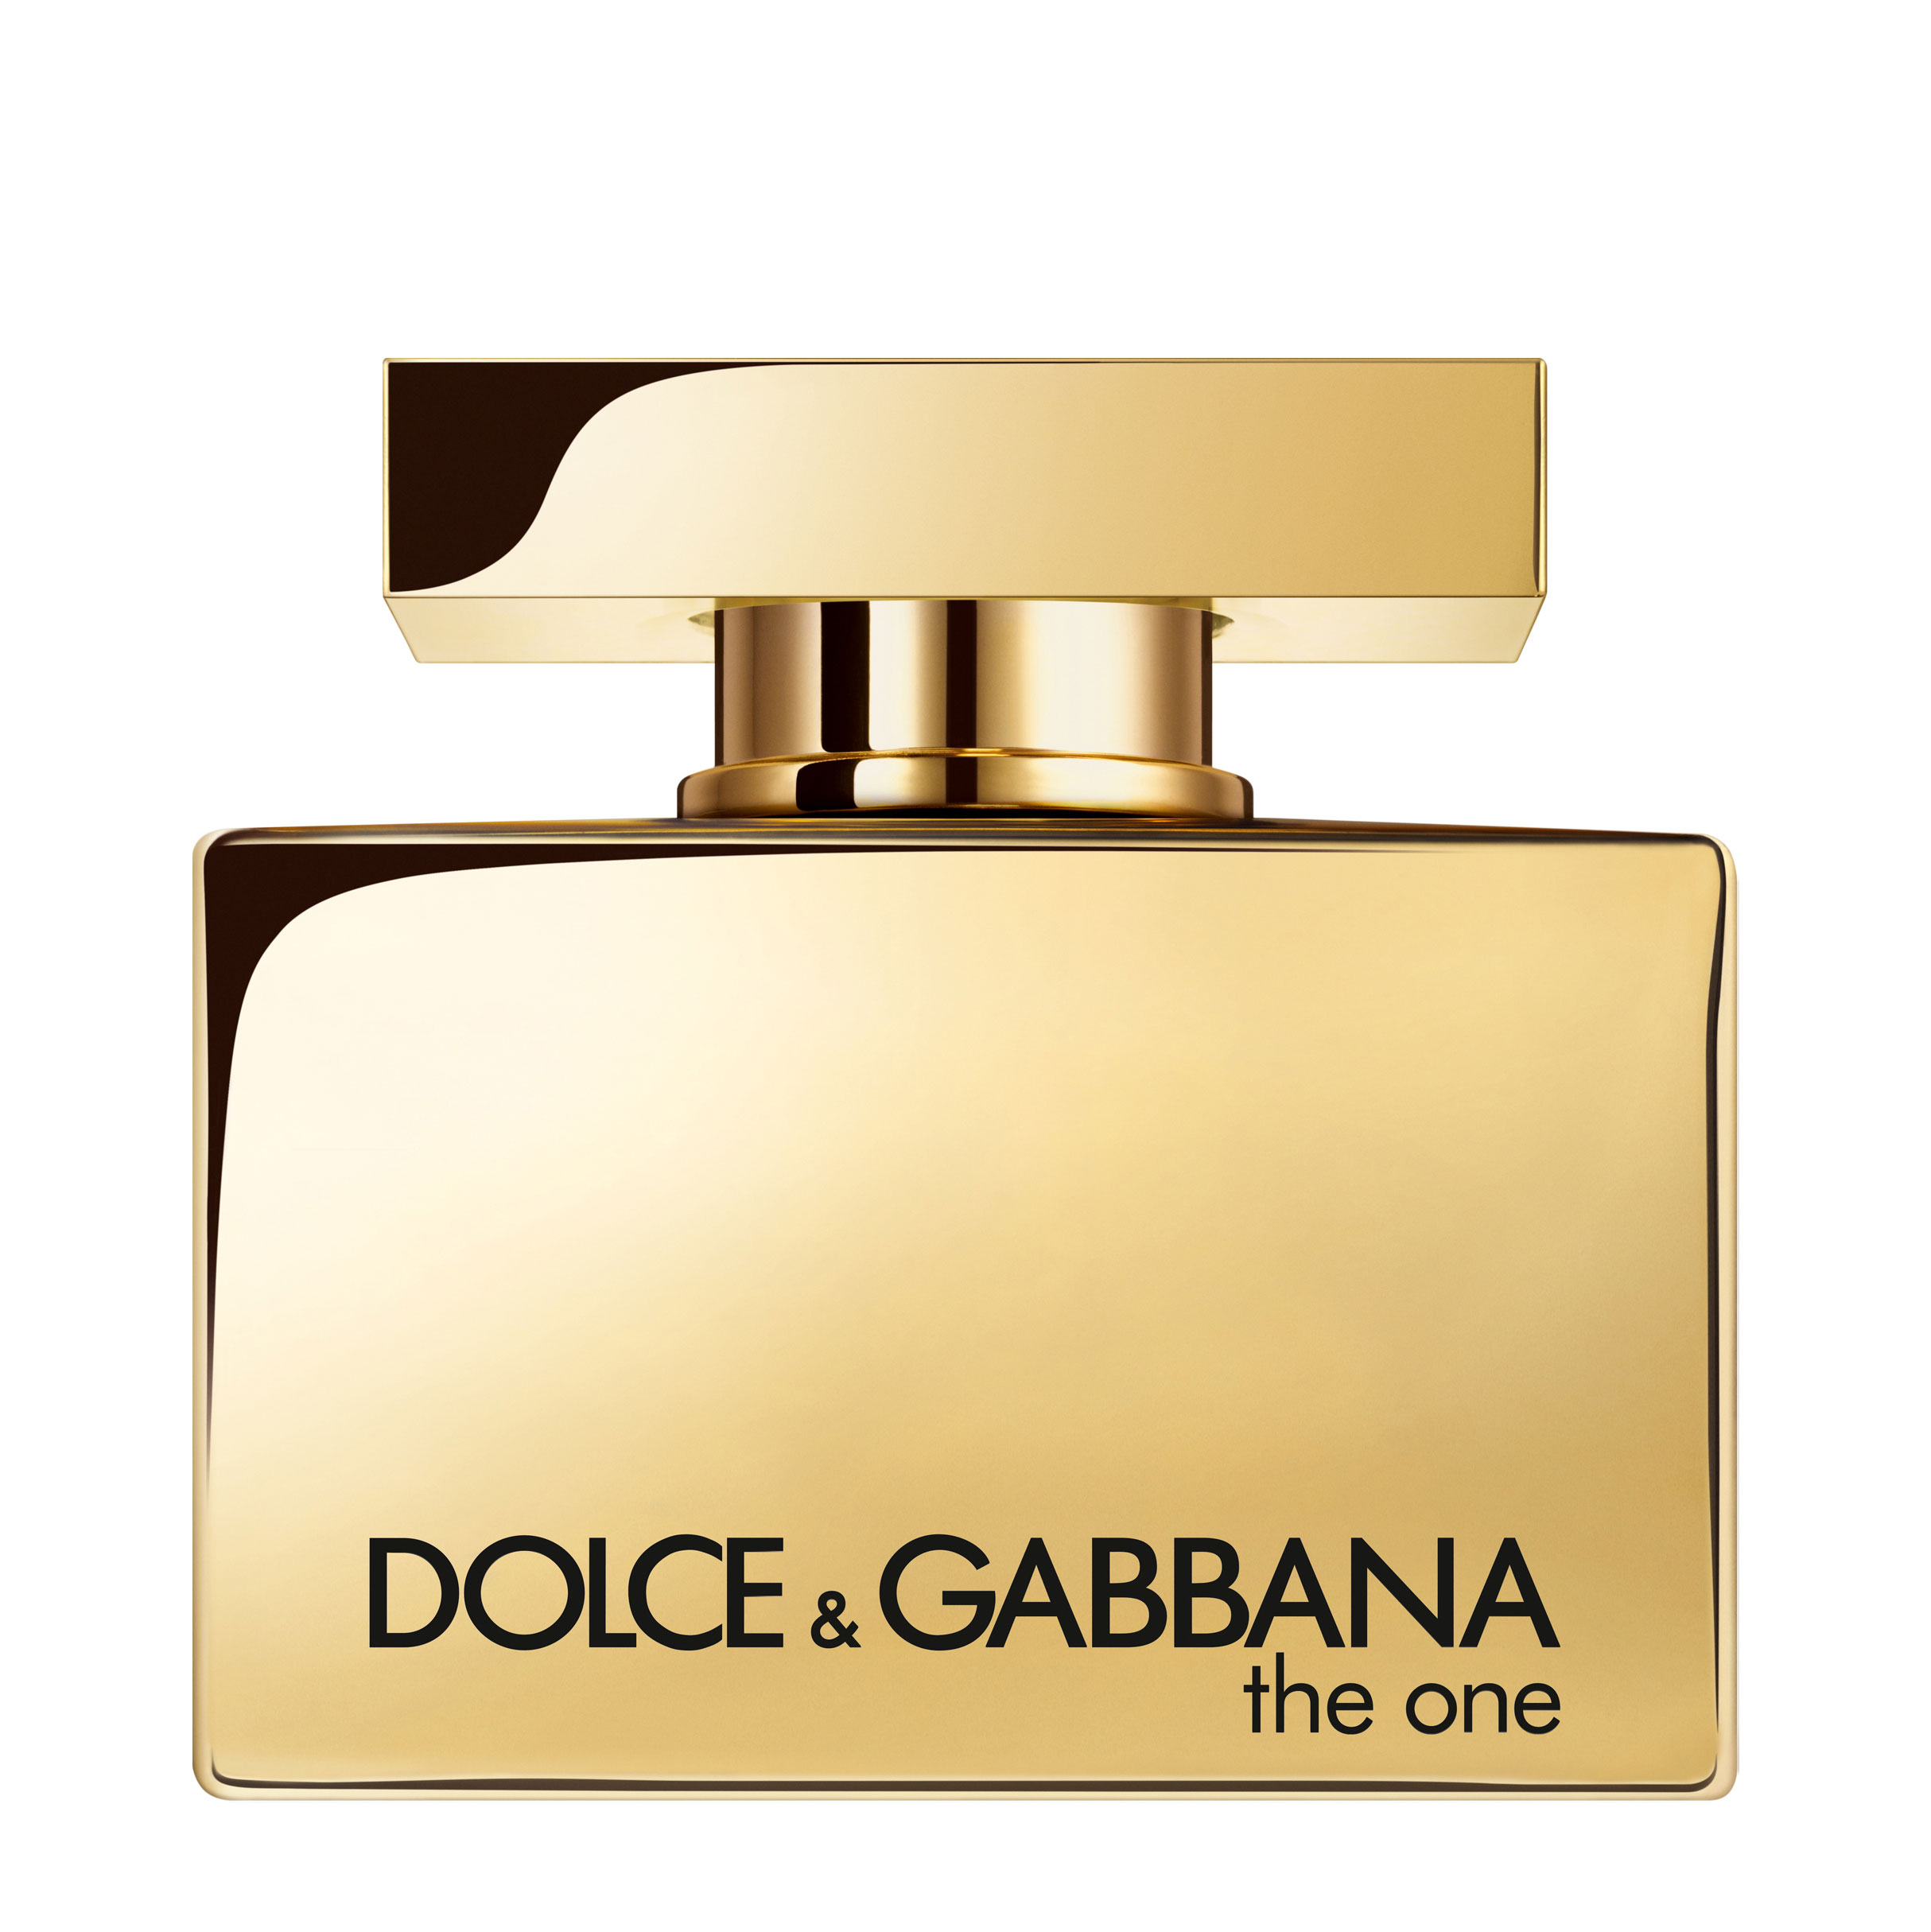 Отзывы дольче габбана зе. Dolce & Gabbana the one women EDP, 75 ml. Dolce Gabbana the one Gold intense 30 ml. Dolce Gabbana the one Gold intense. Духи Gold Dolce Gabbana the one.